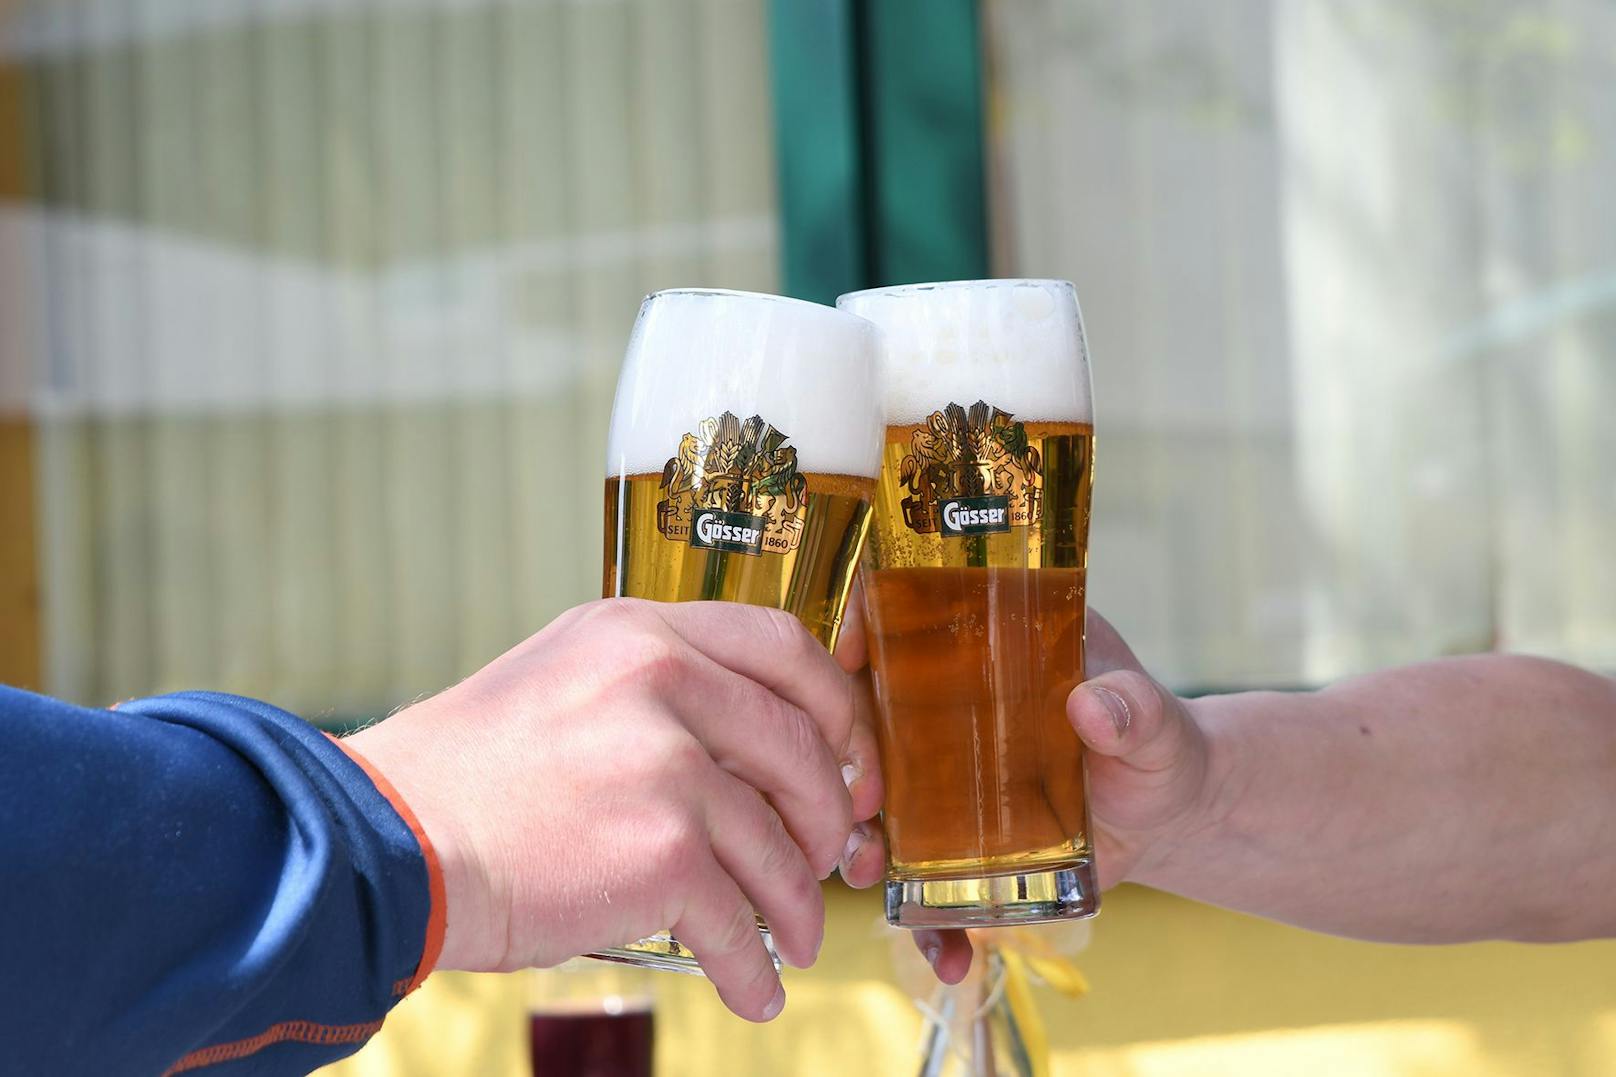 Die beiden Männer wurden angetroffen, als sie im Lokal Bier getrunken haben. Symbolbild. 